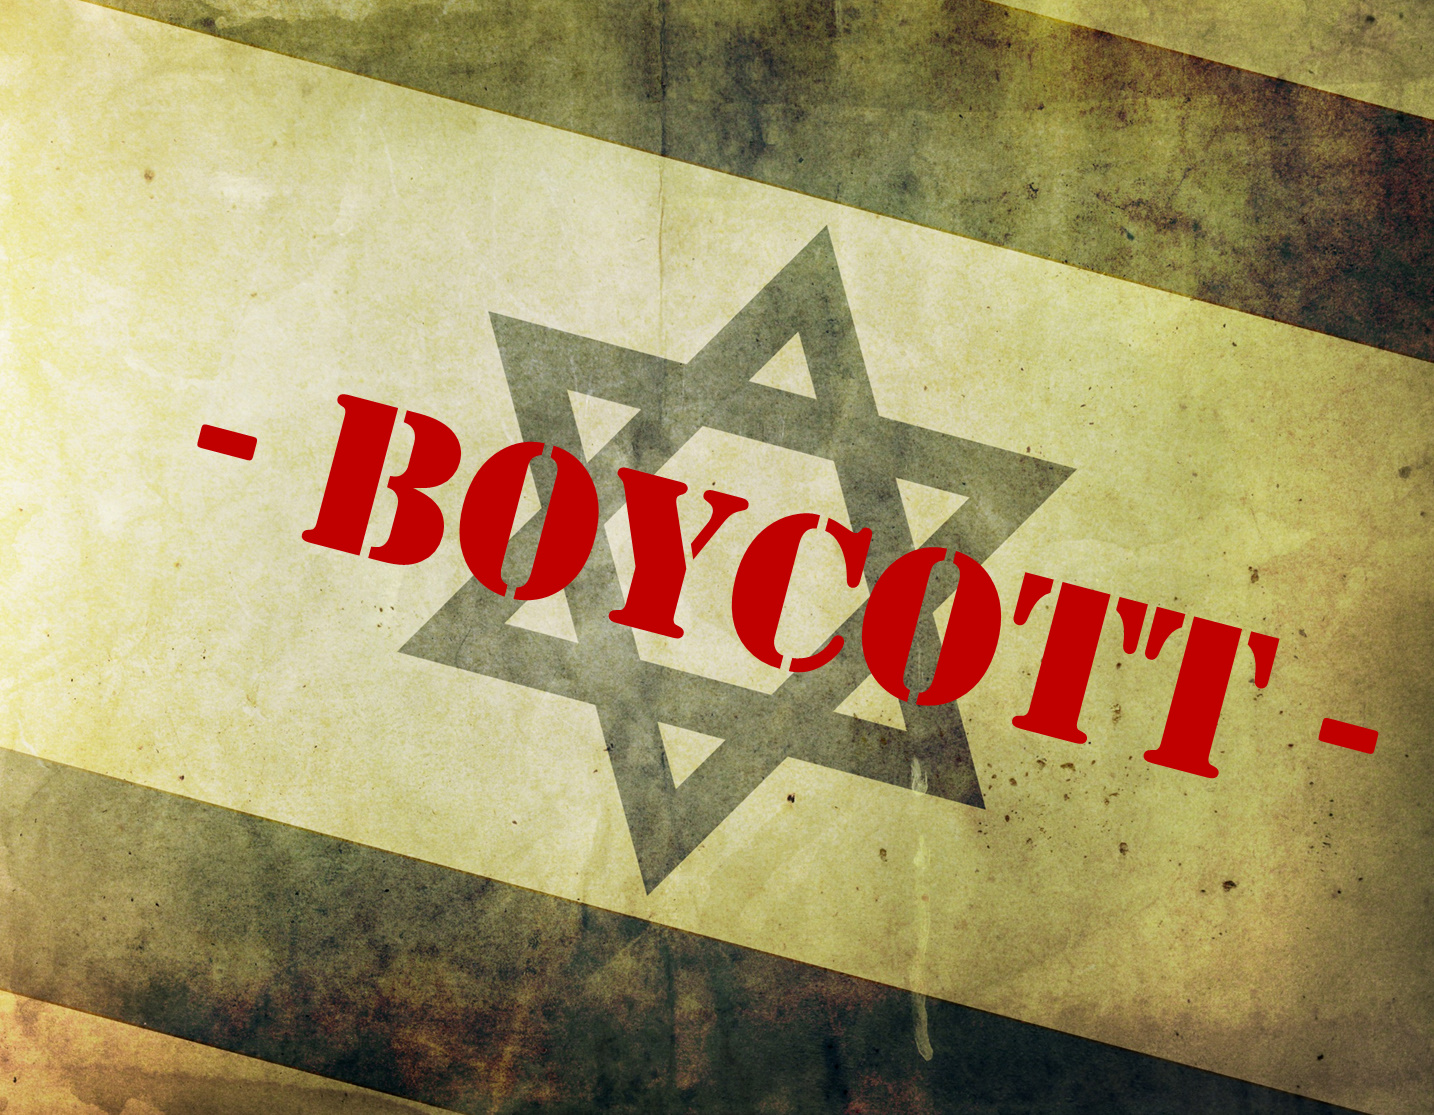 South African Halaal Body, MJC, Boycotts Israeli Goods